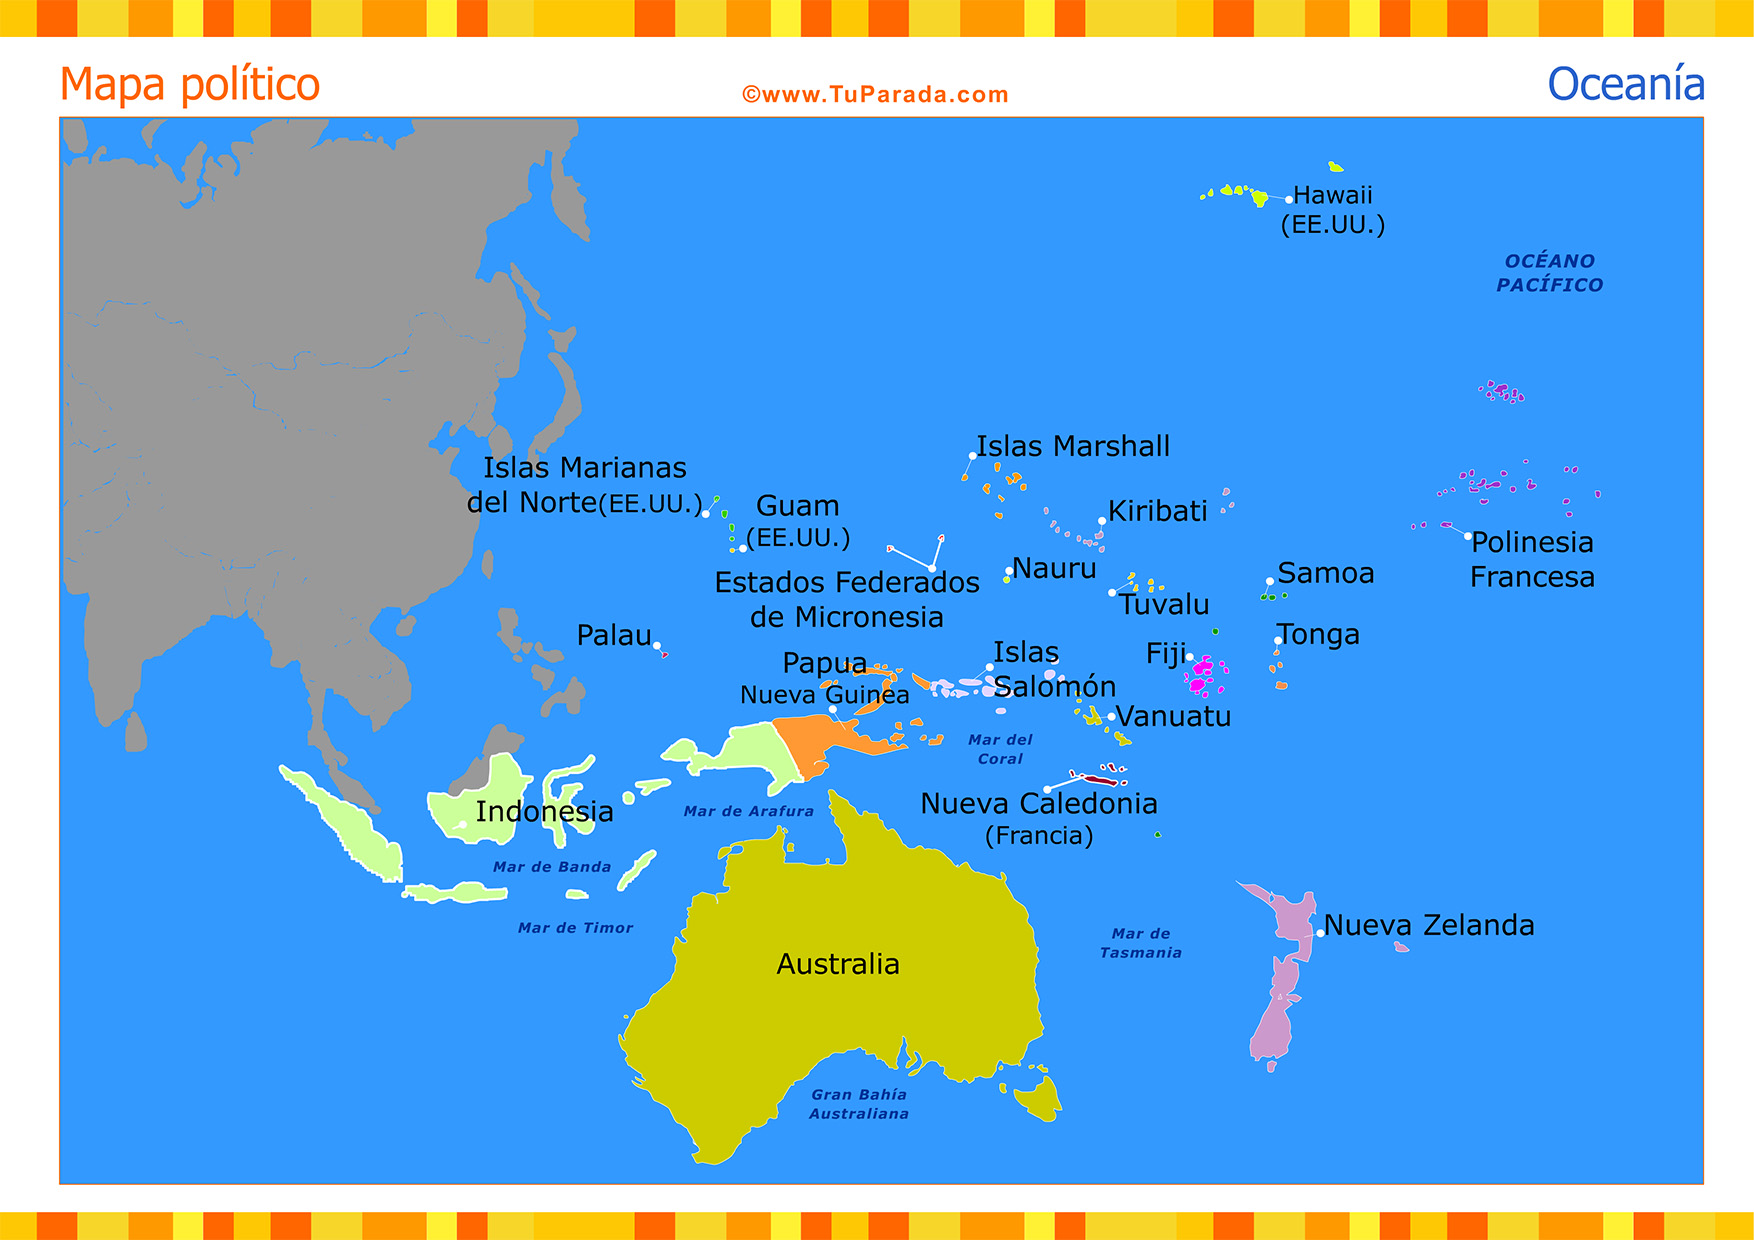 Mapa de Oceanía político